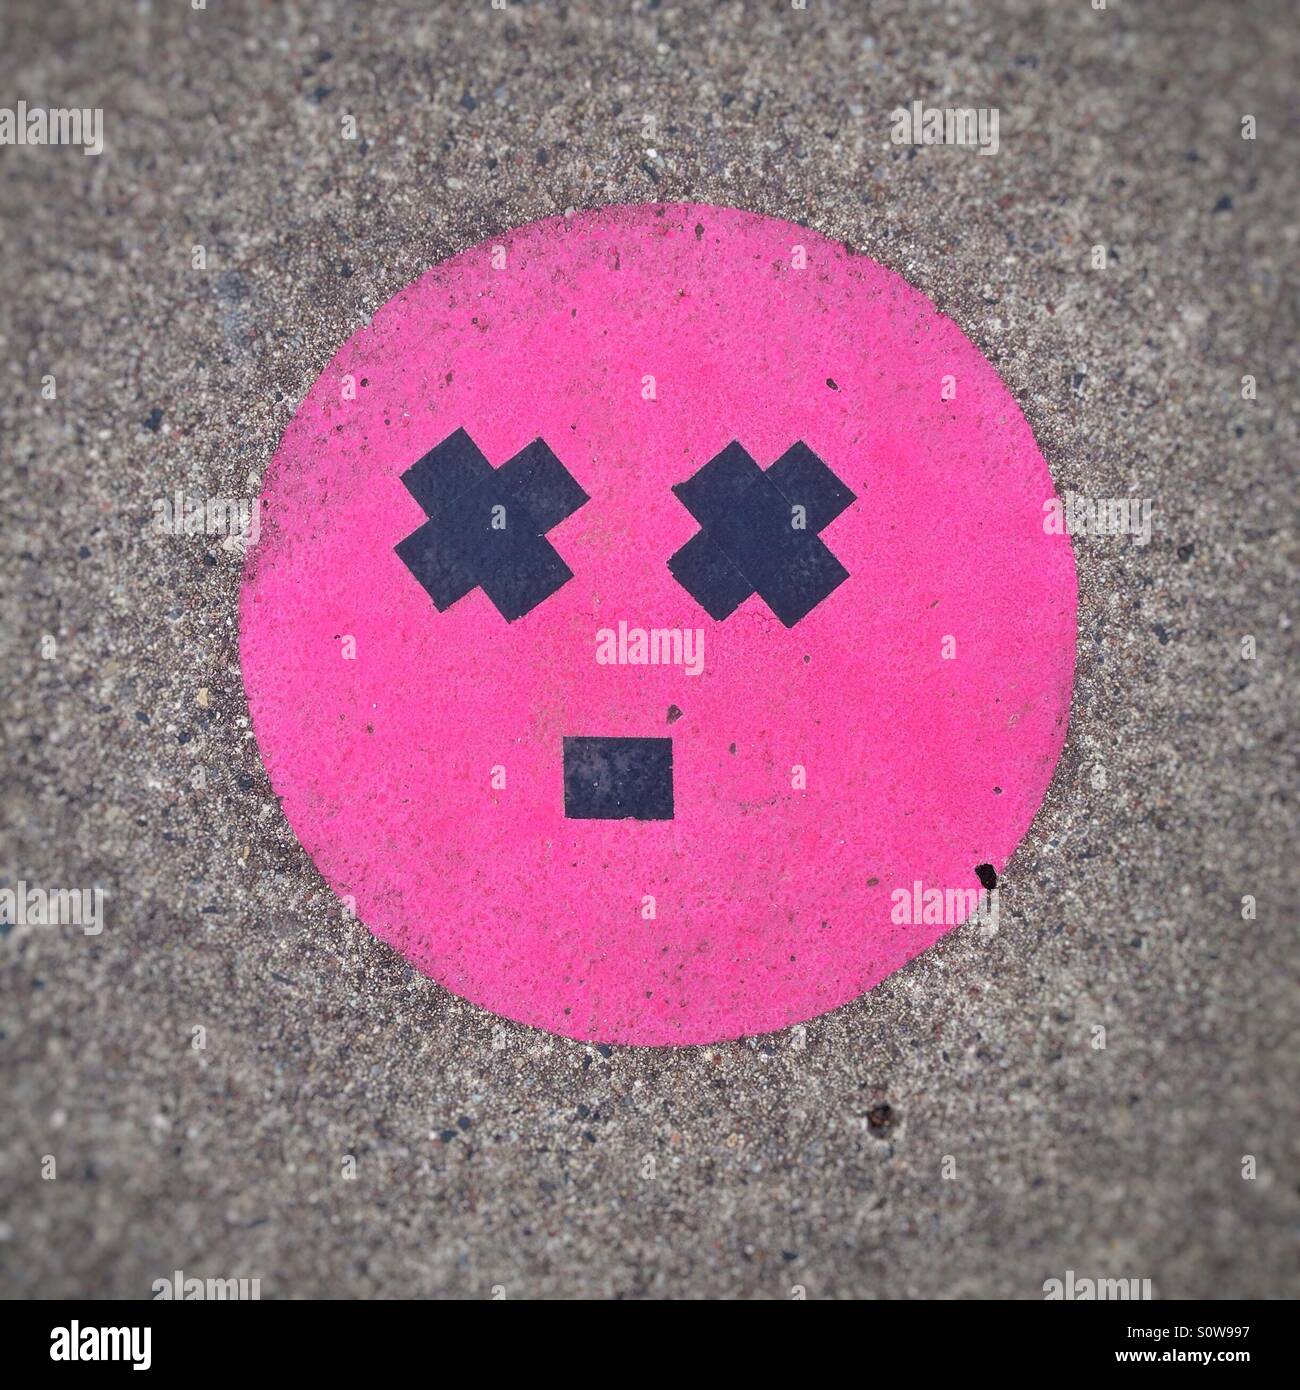 Giramenti di Testa o faccia stupita emoticon o gli Emoji creata sul marciapiede con nastro per condotti Foto Stock